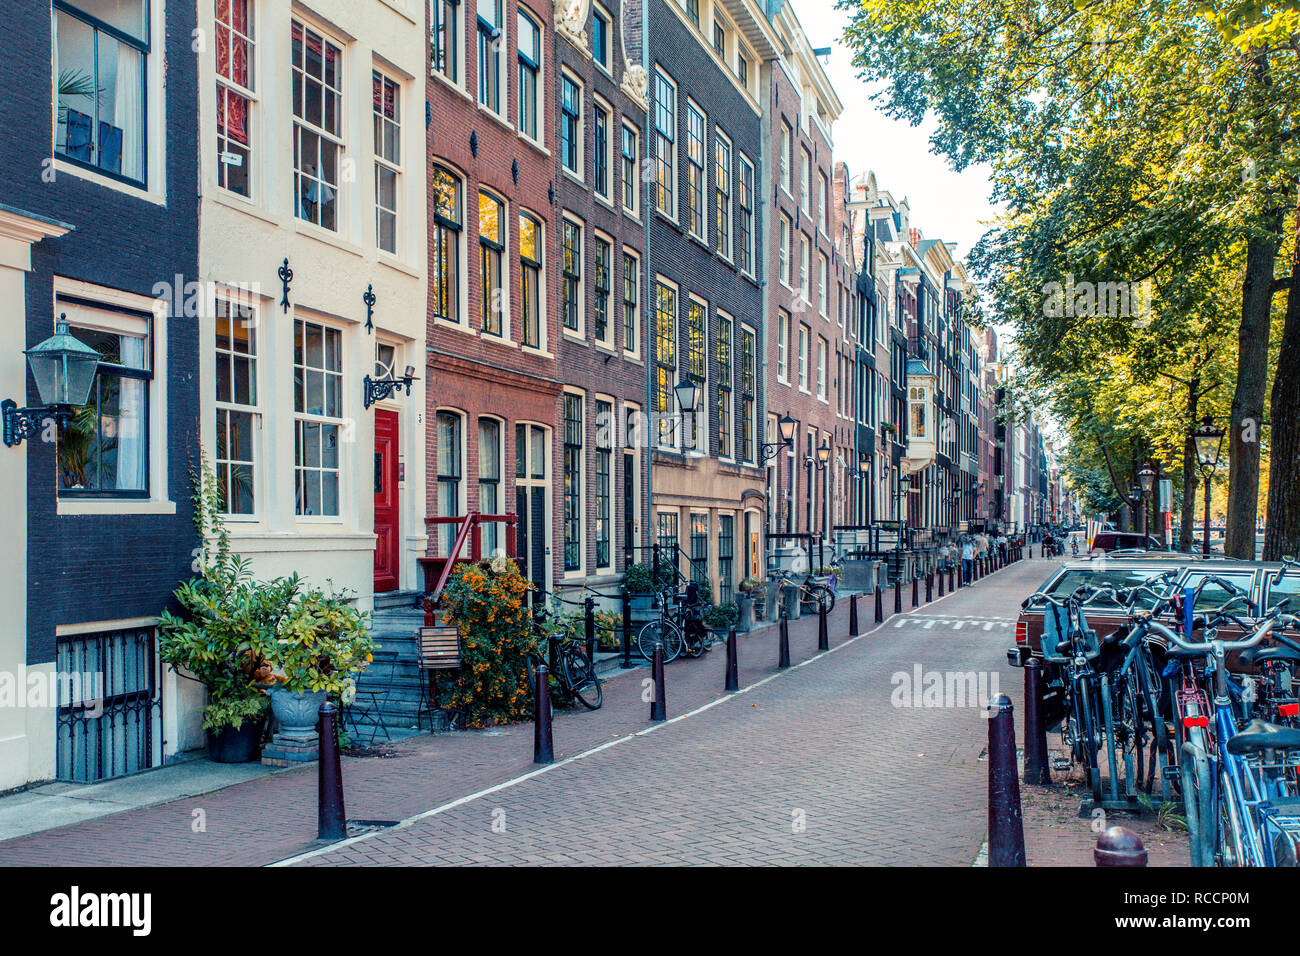 AMSTERDAM, Países Bajos - Septiembre 1, 2019: escena de una calle de la ciudad de Amsterdam con el ejemplo de la arquitectura típica. Foto de stock